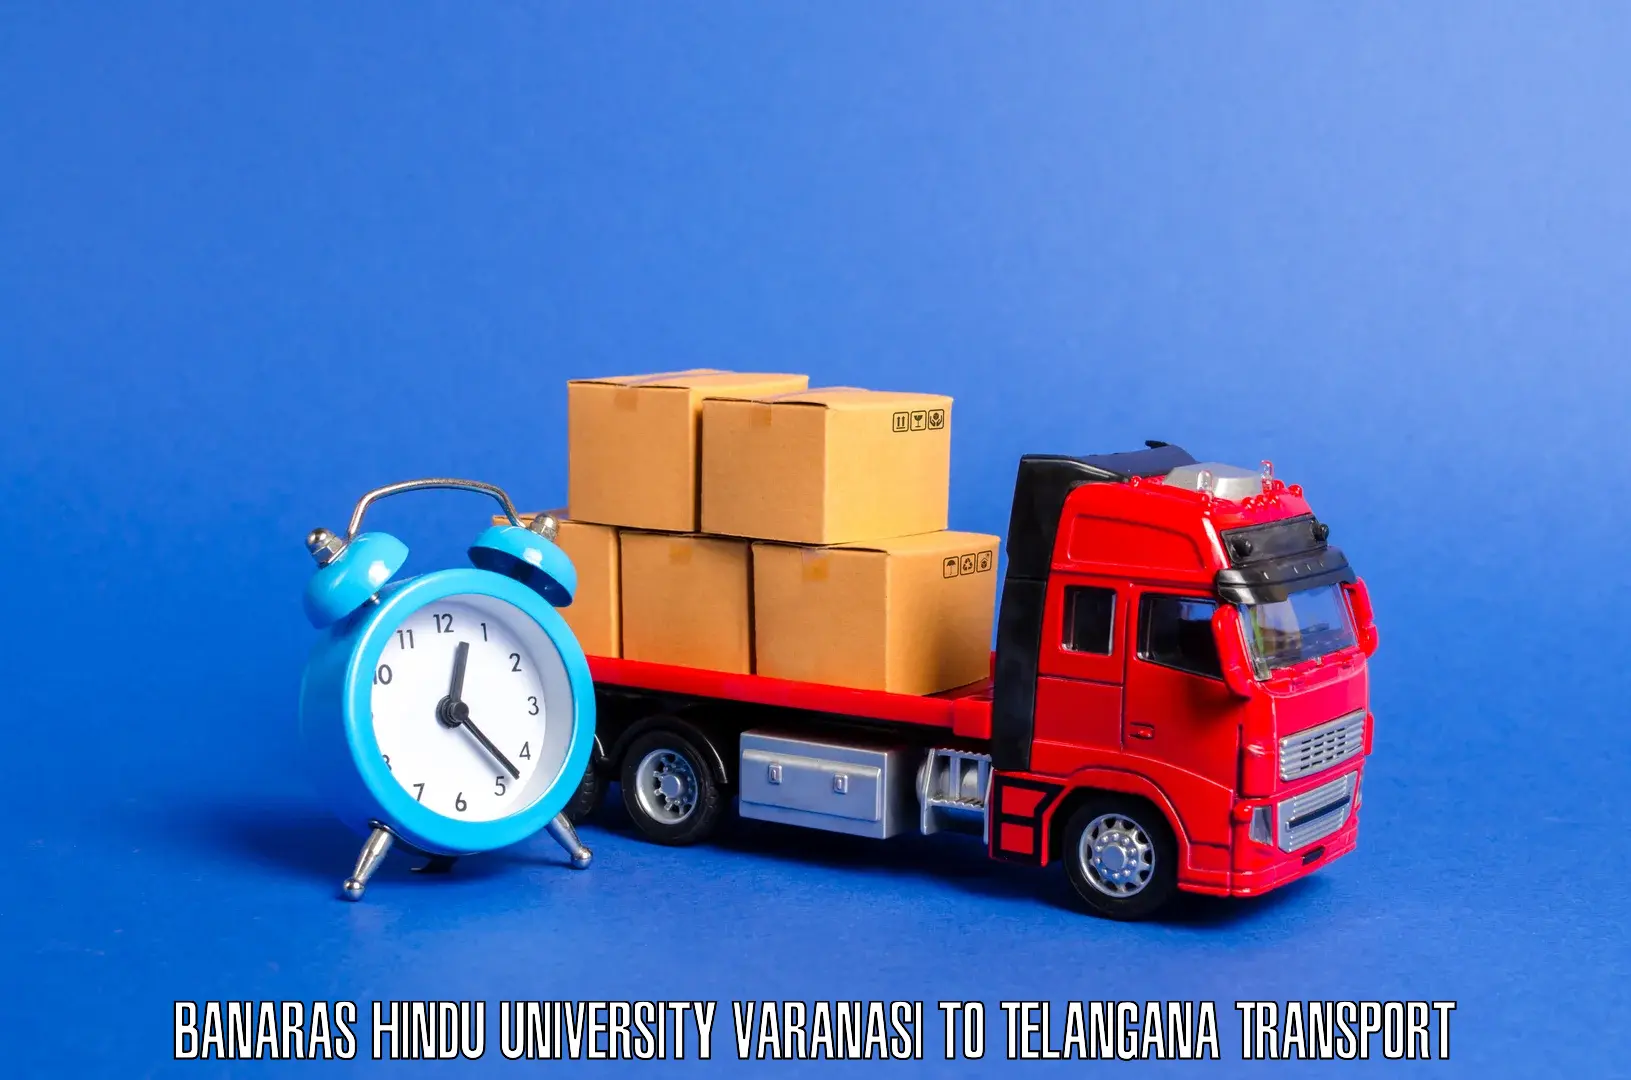 Daily transport service Banaras Hindu University Varanasi to Medchal